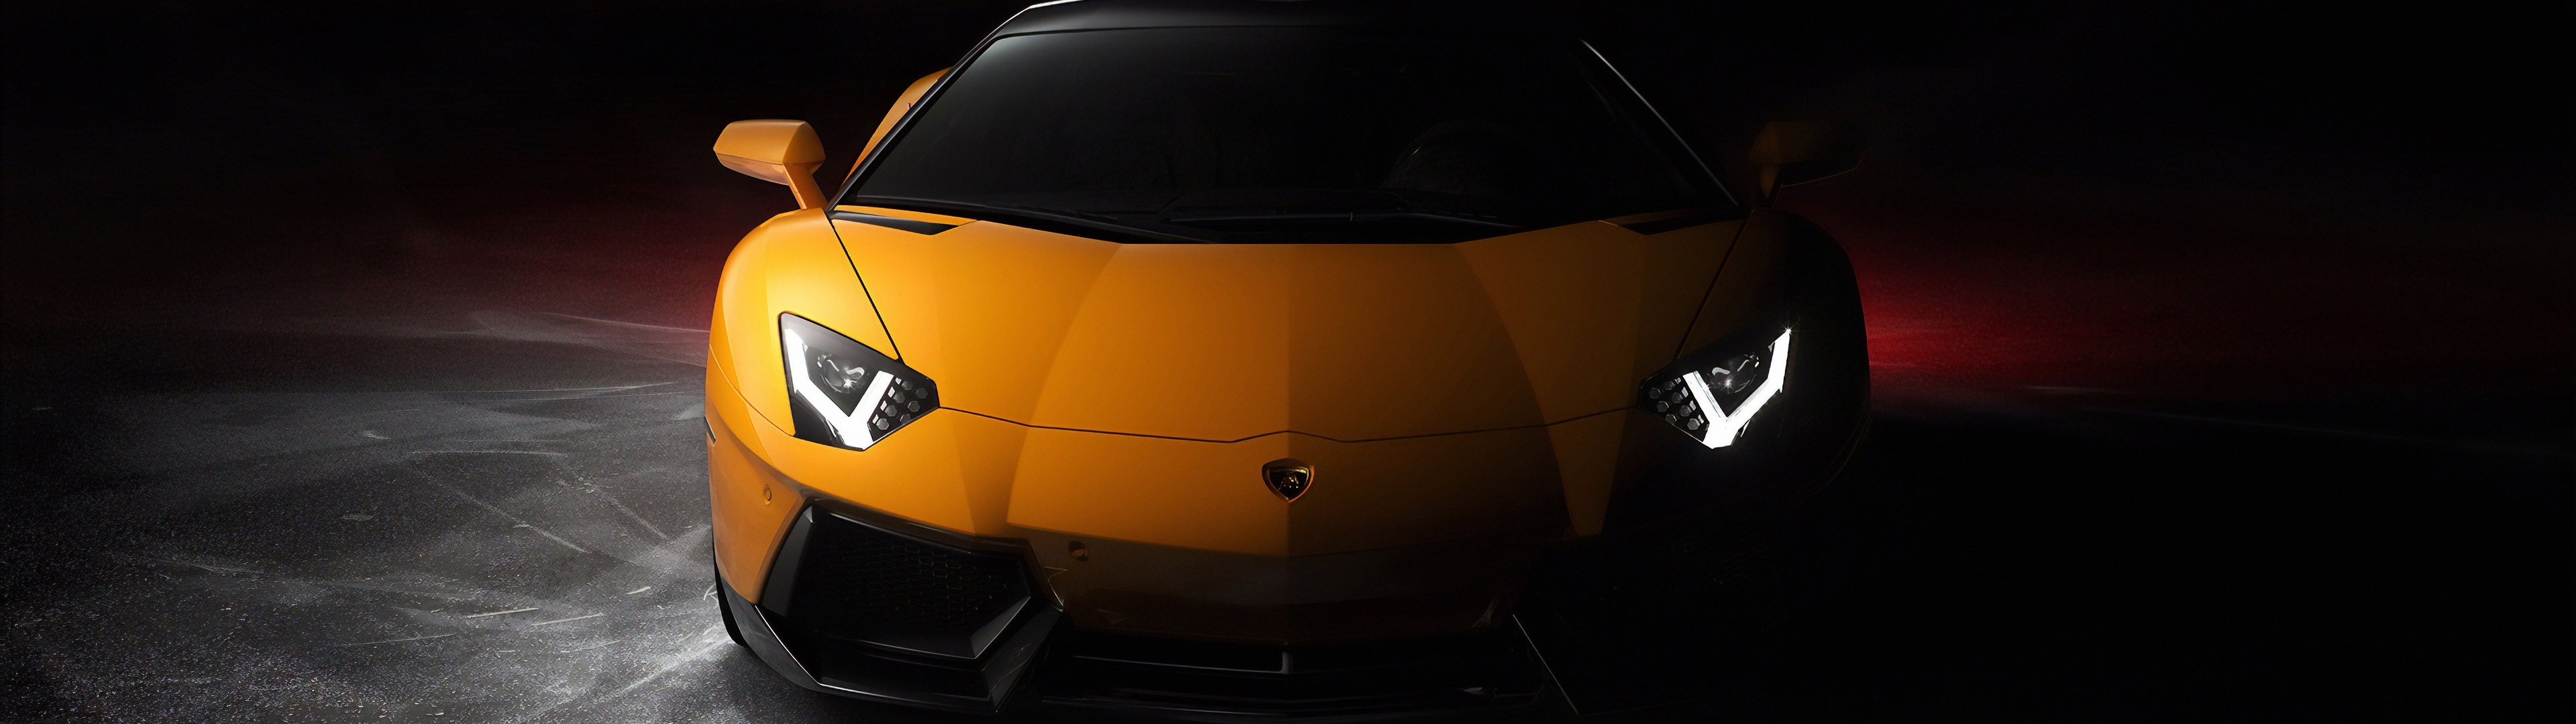 Hình ảnh Lamborghini Aventador Wallpaper 4K sẽ khiến bạn trầm trồ với vẻ đẹp tuyệt vời của một chiếc siêu xe thể thao. Hãy thưởng thức những đường nét hoàn hảo, và cảm nhận được sự mê hoặc của Lamborghini Aventador.